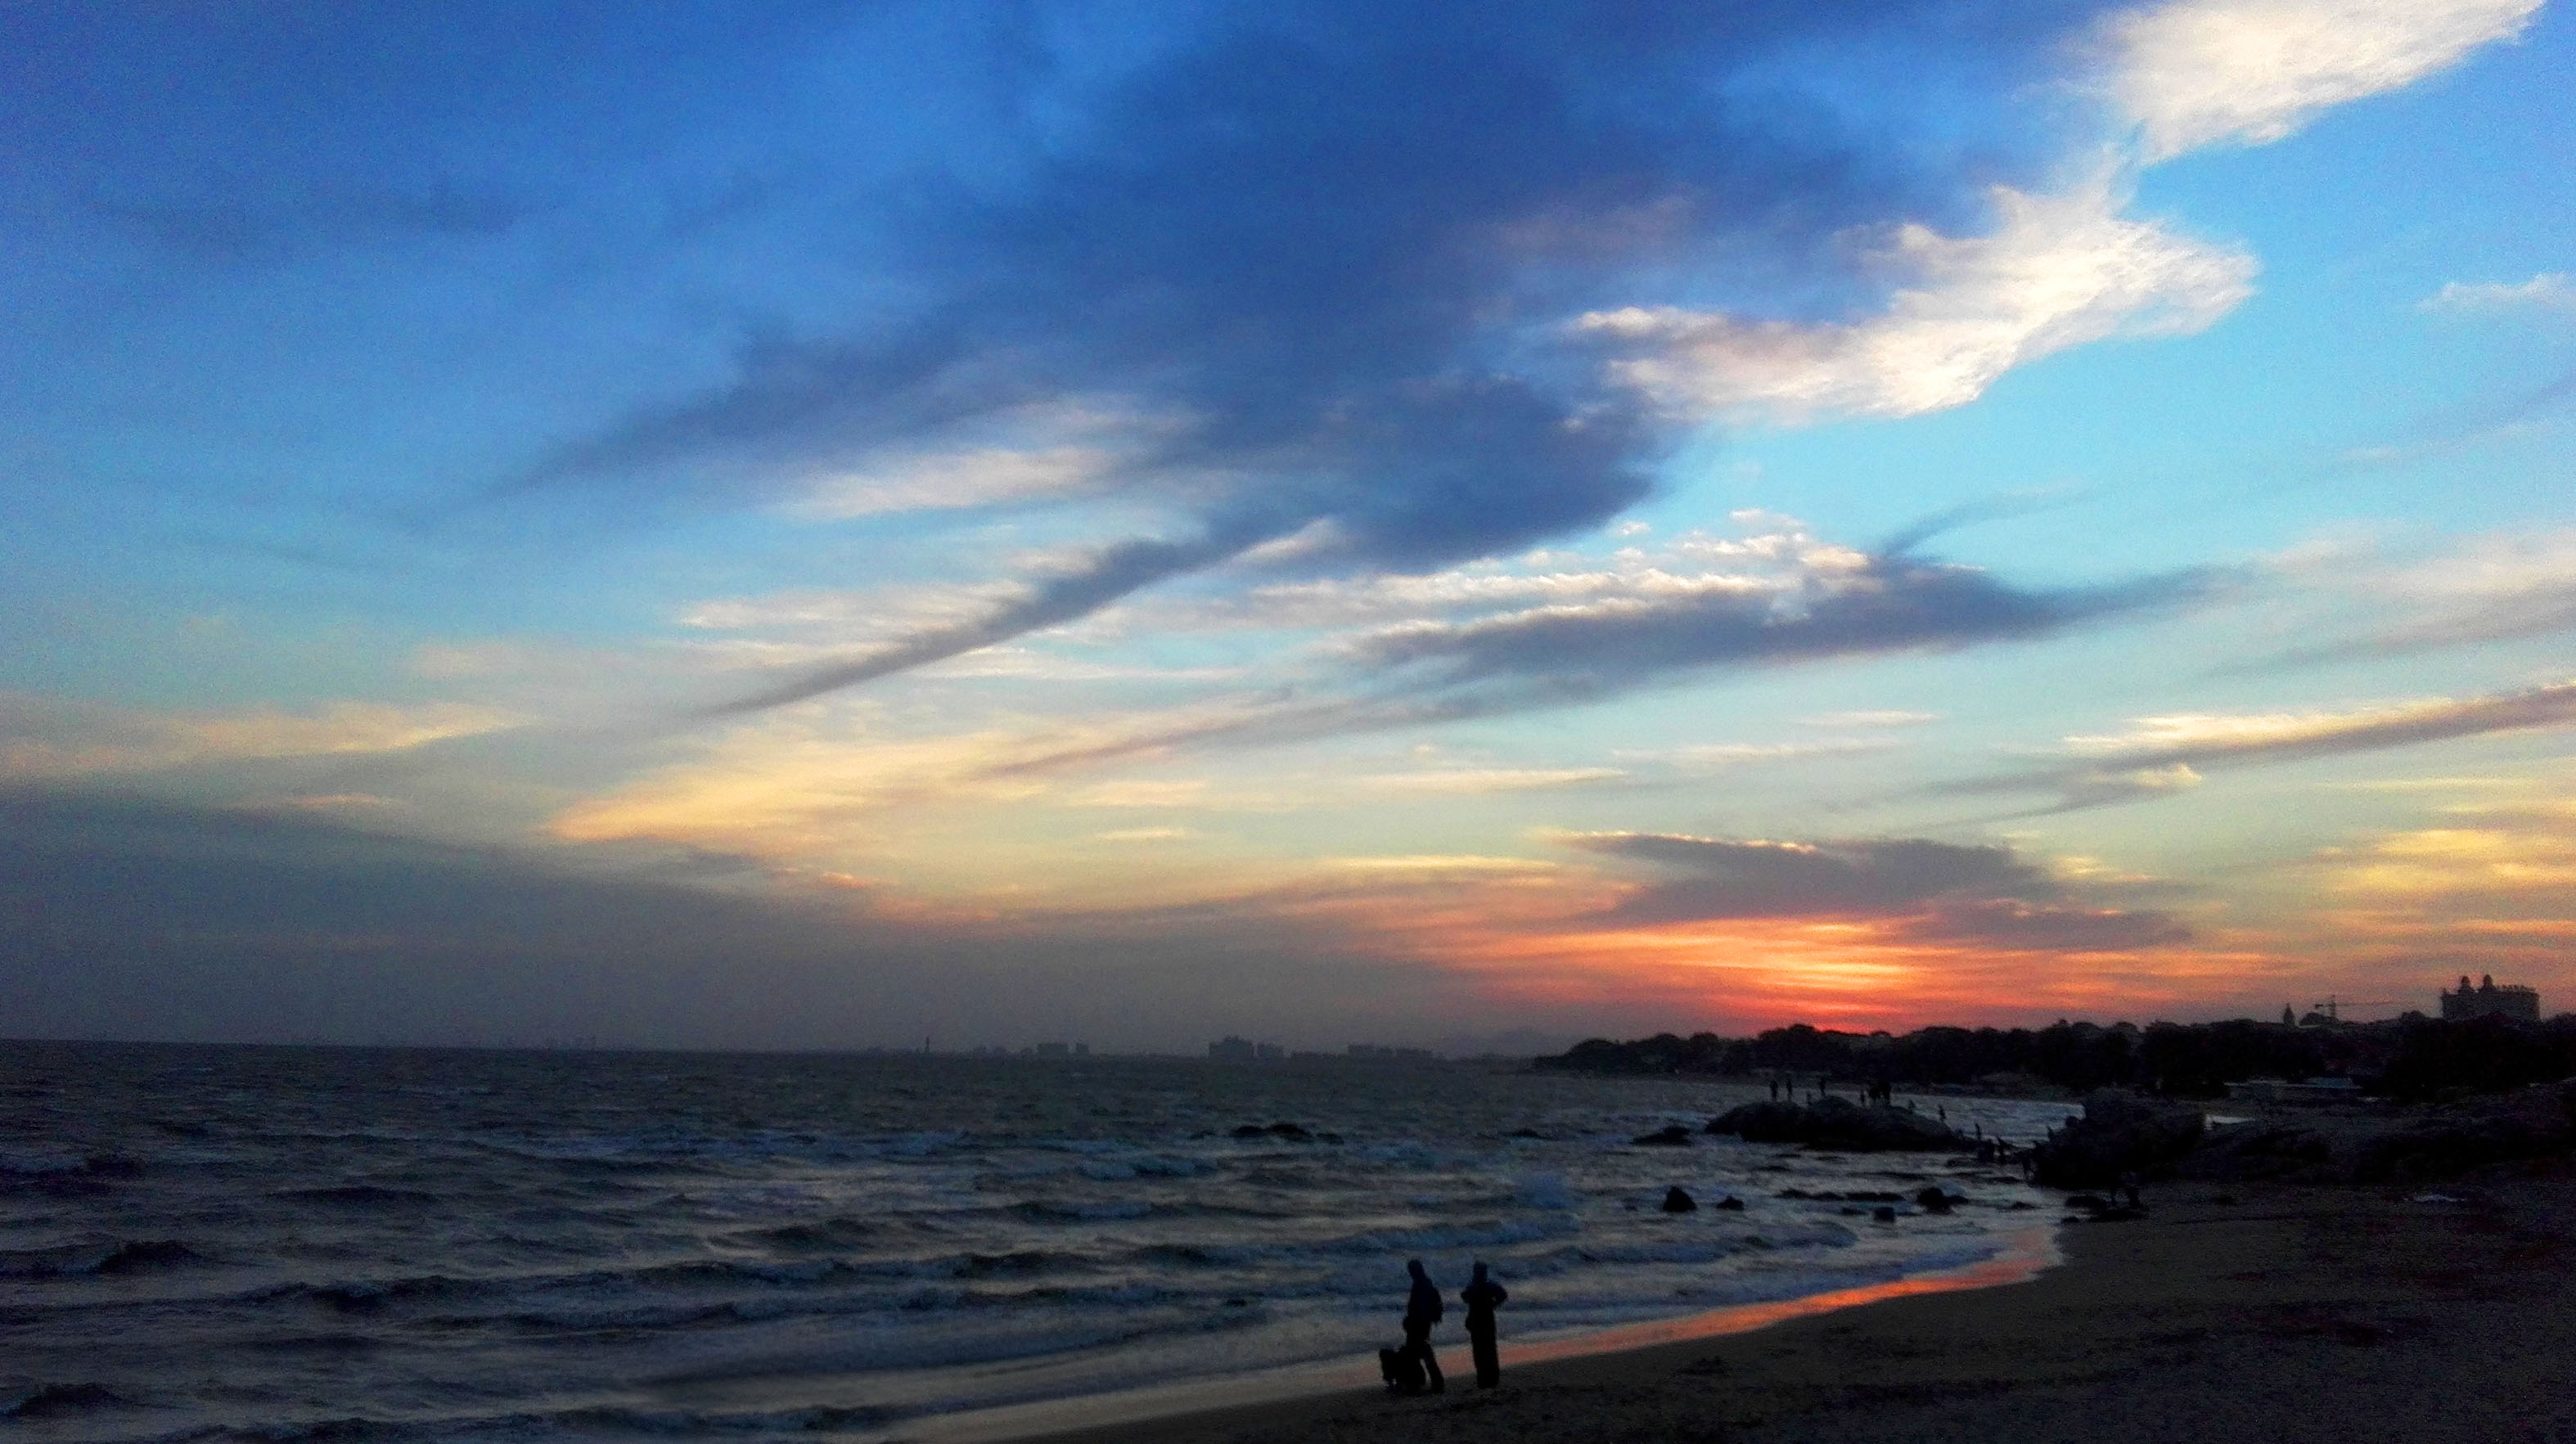 秦皇岛-北戴河，在宁静的沙滩上坐看日出日落 - 北戴河游记攻略【携程攻略】